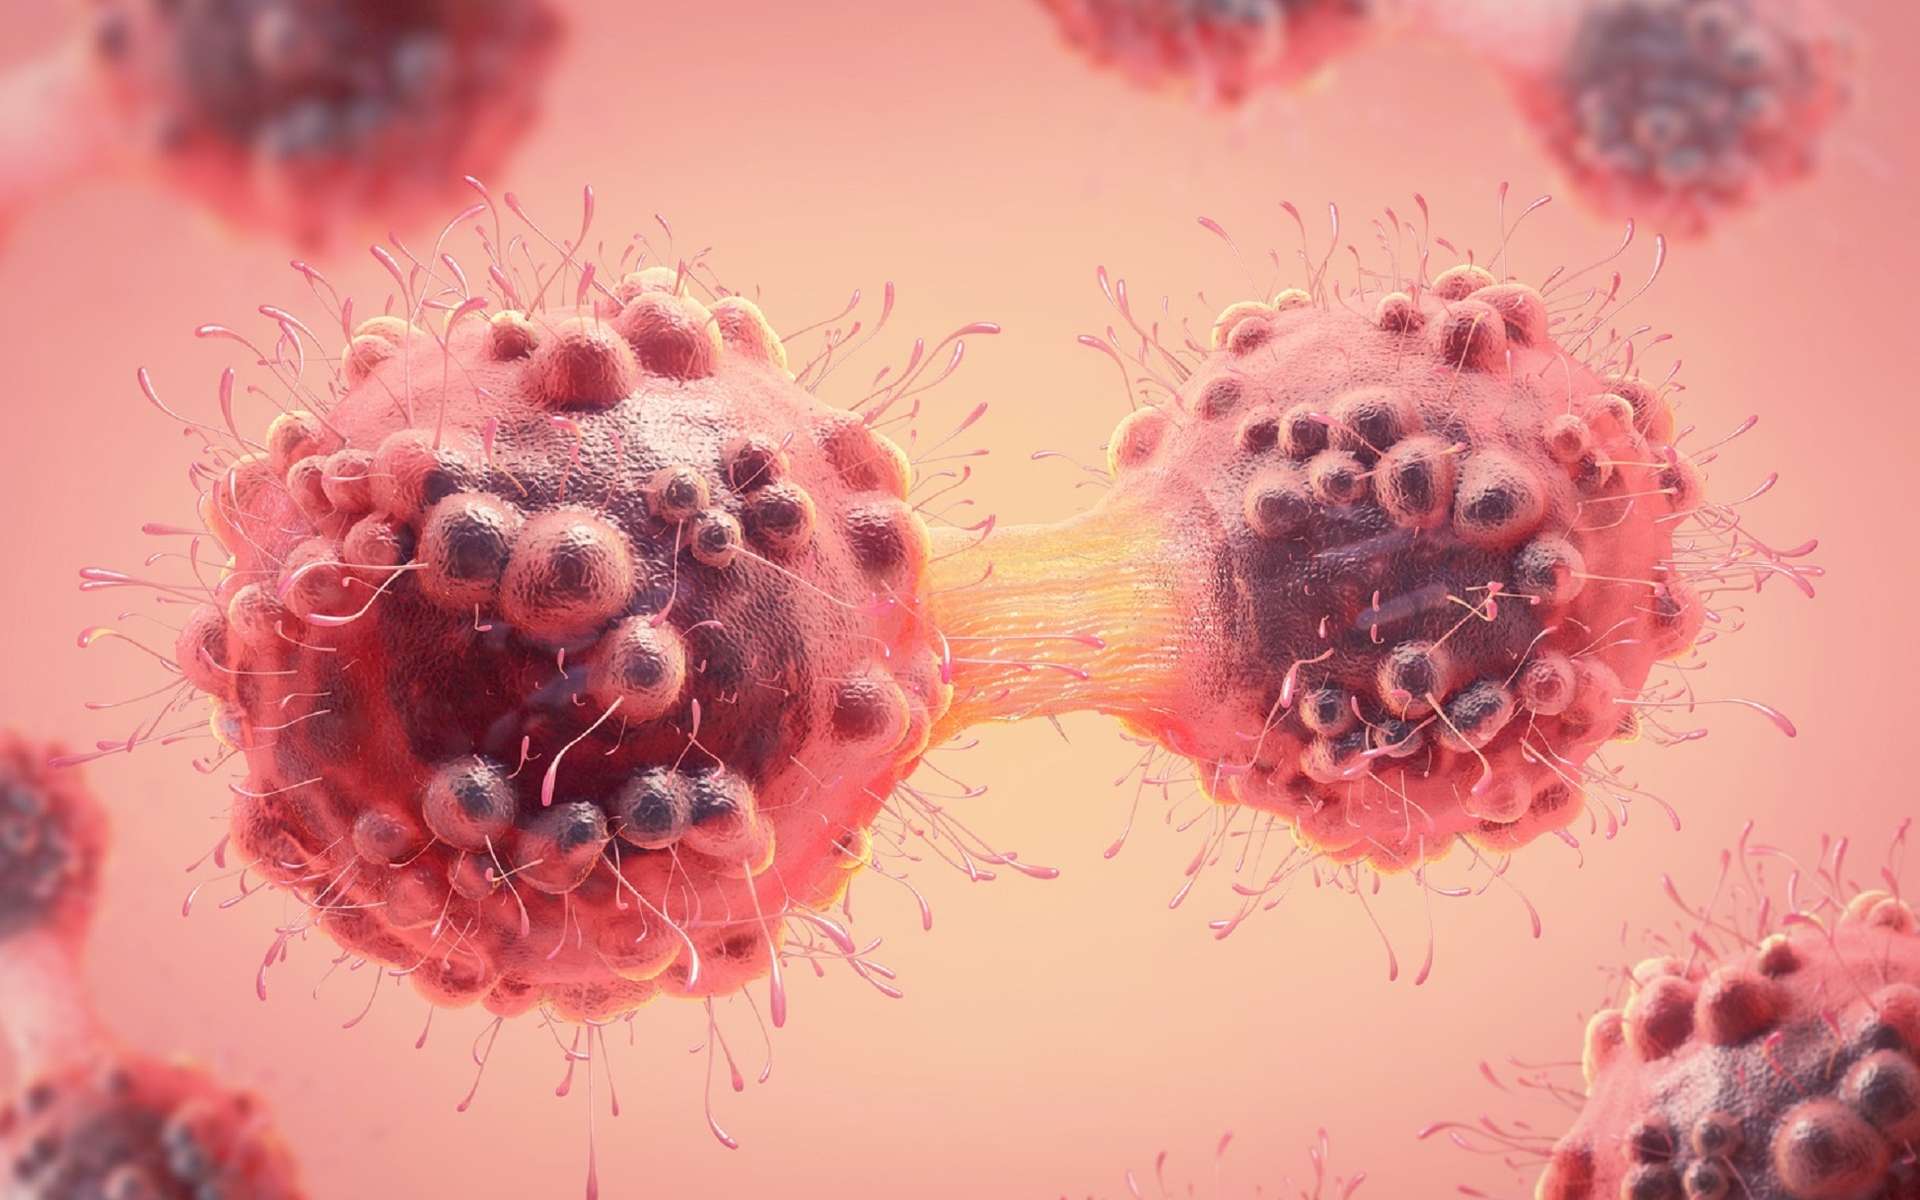 Les gènes suppresseurs de tumeurs empêchent la prolifération des cellules tumorales. © Christoph Burgstedt, Fotolia